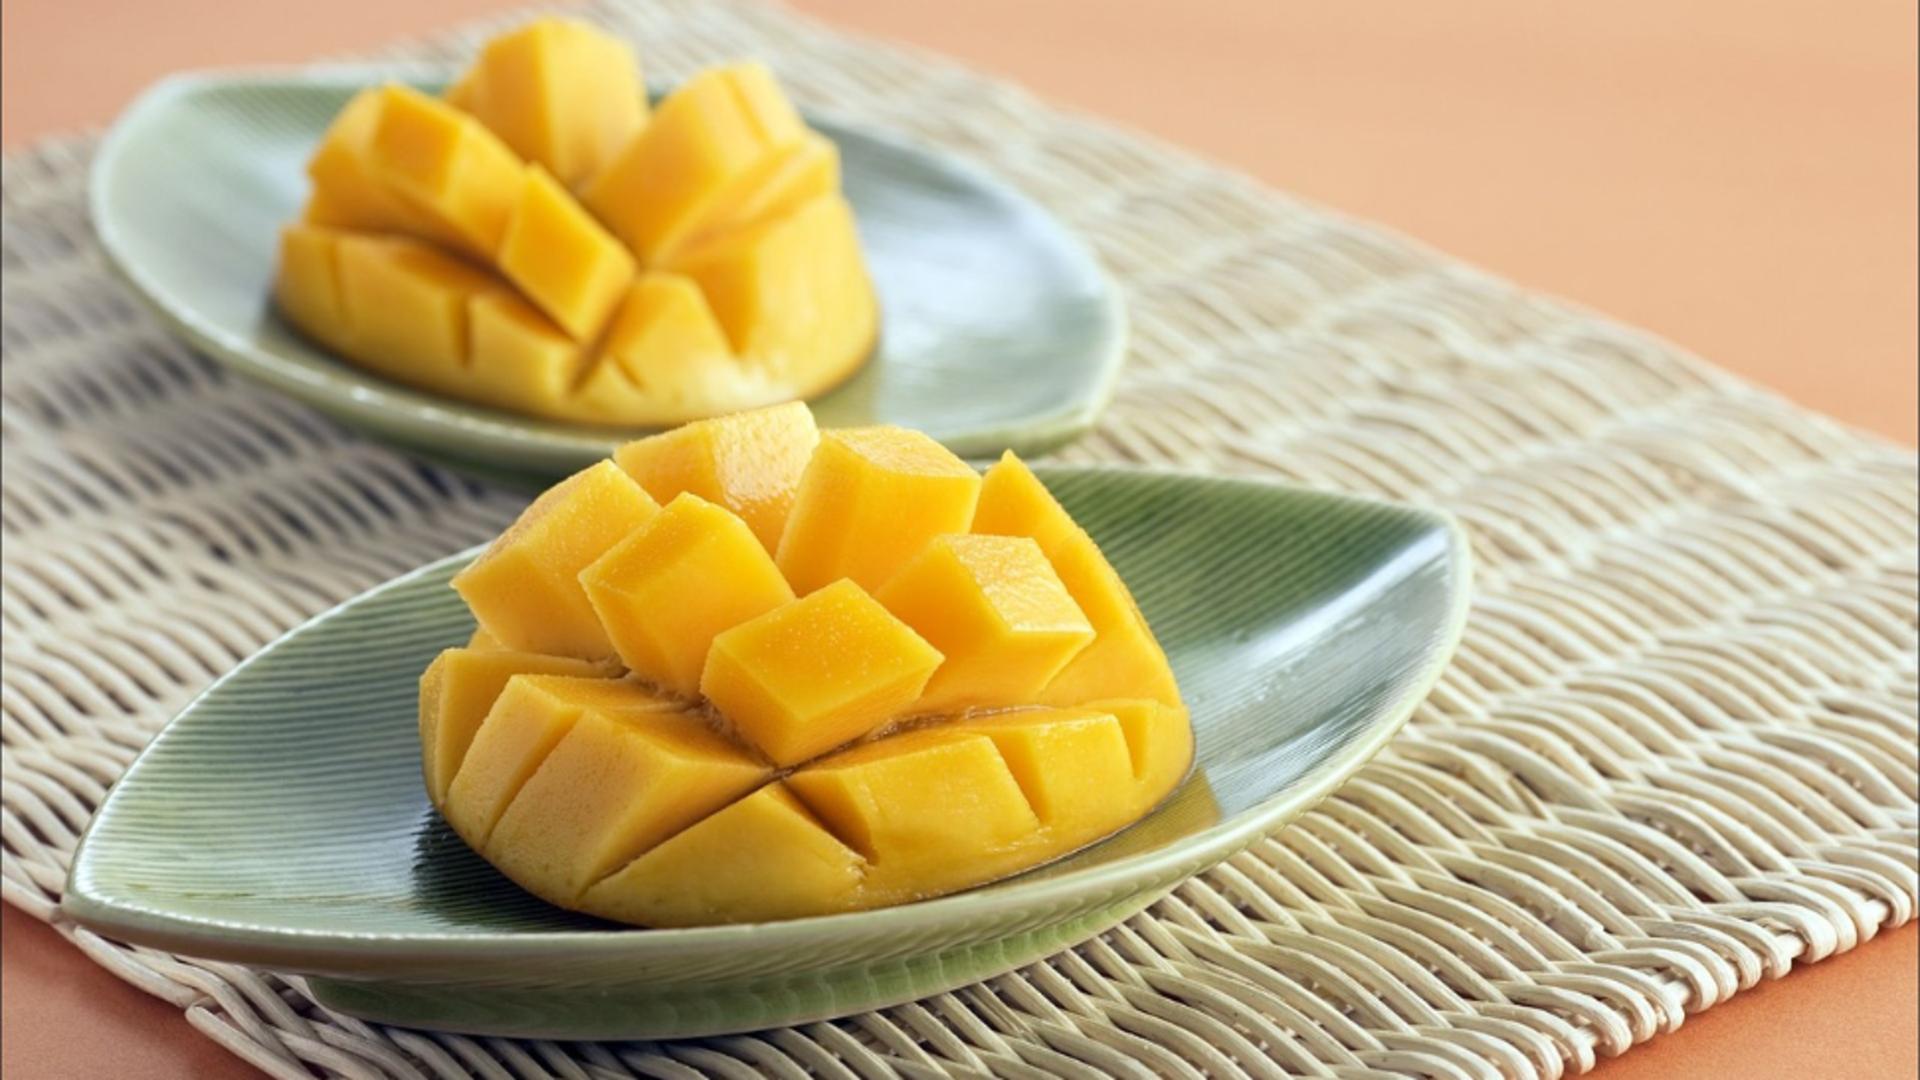 Combinația ciudată: mango cu sare – În ce zone se mănâncă în acest fel și care e motivul